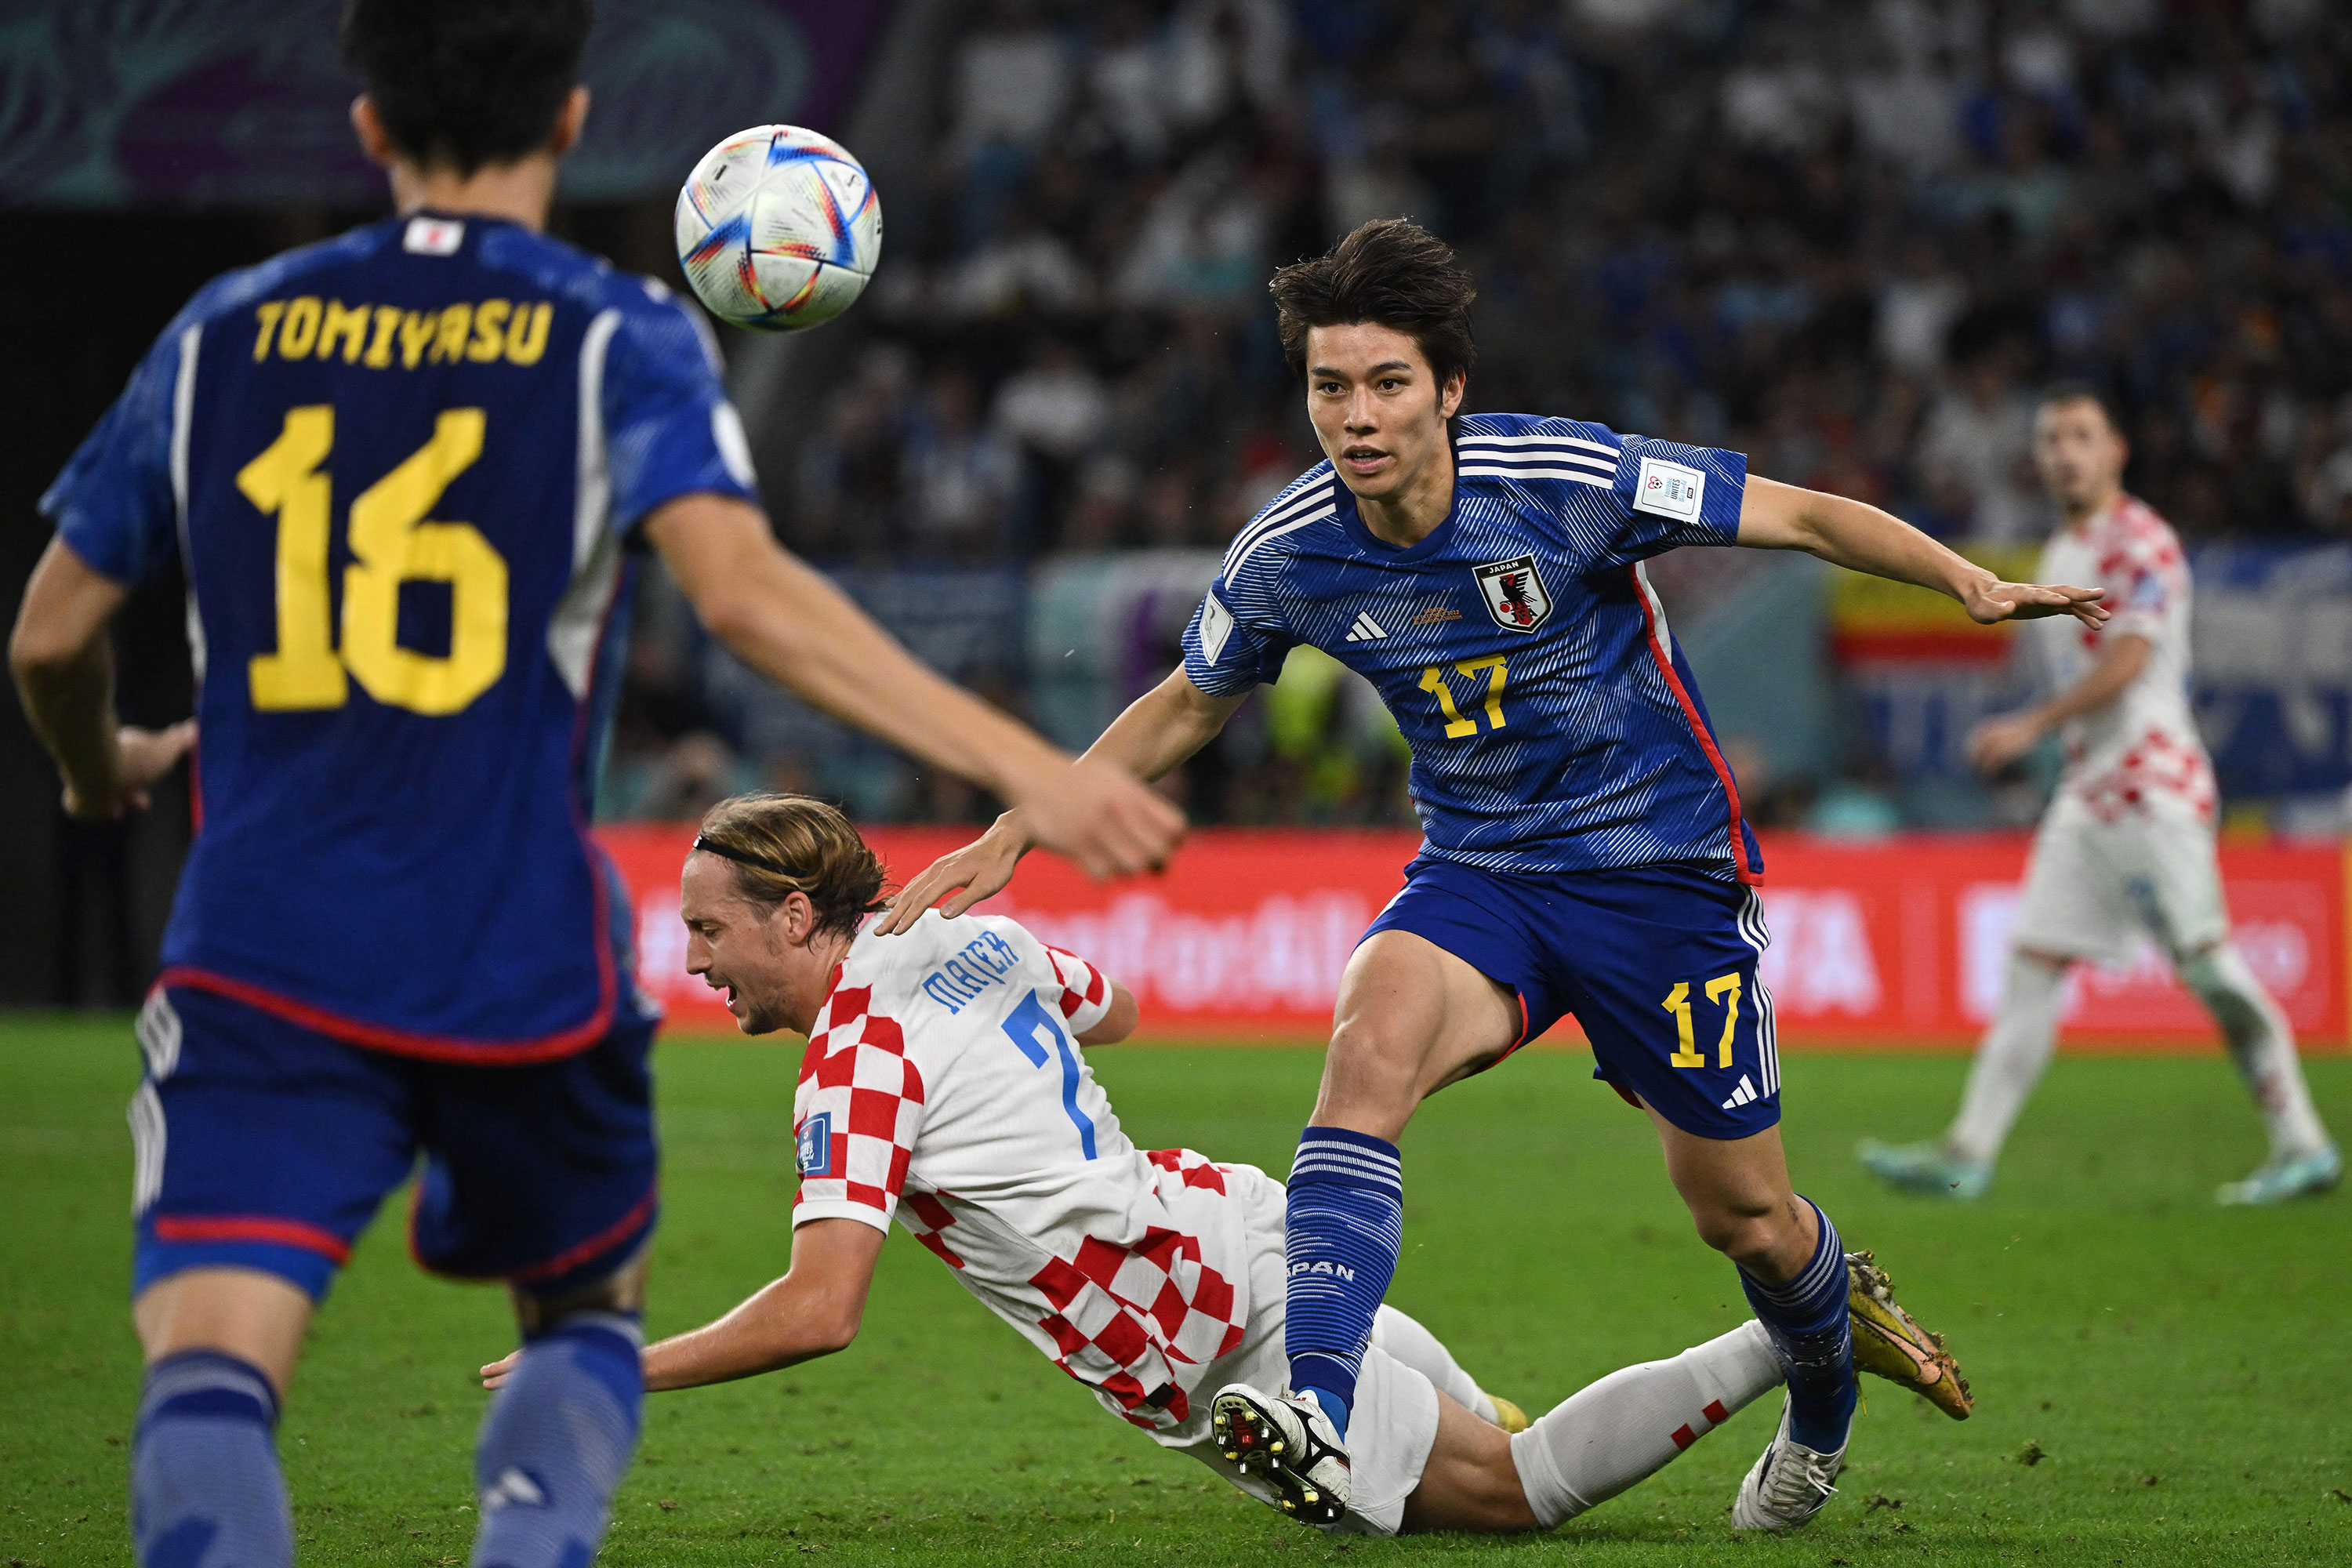 Croatia's Lovro Majer, center, falls on the pitch past Japan's Ao Tanaka, right.